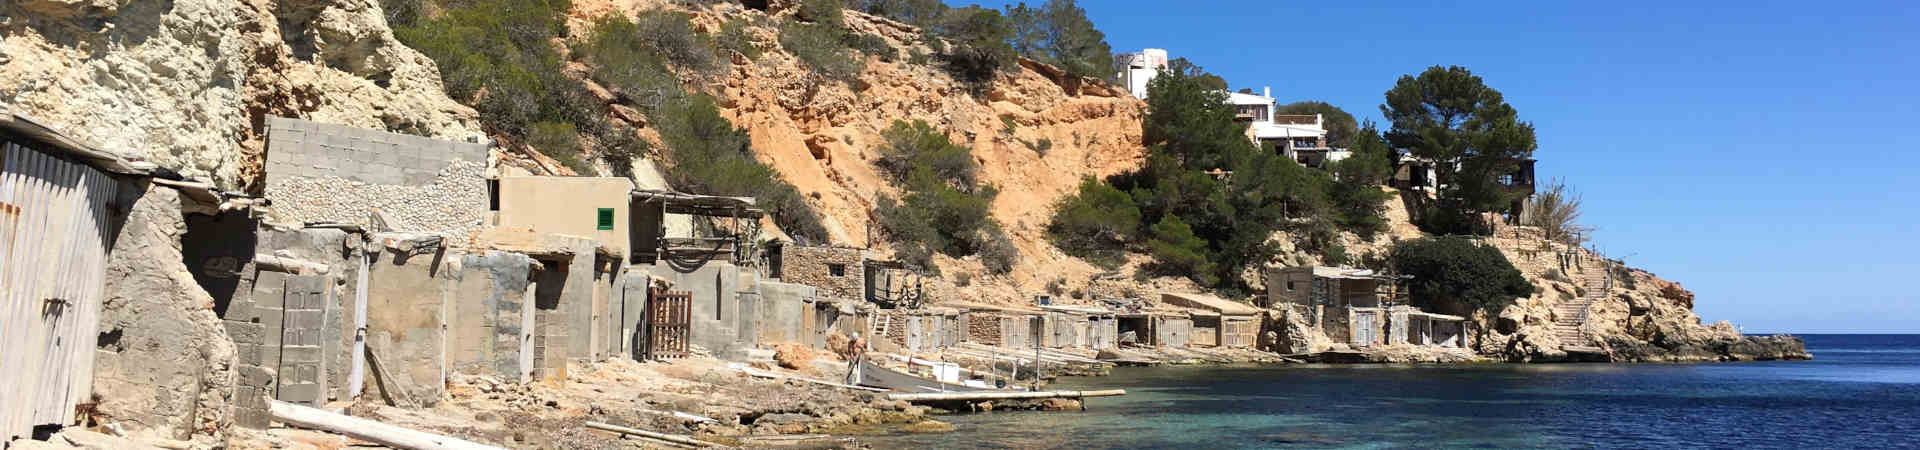 Immagine del porto di arrivo Ibiza per la rotta traghetto Valencia - Ibiza